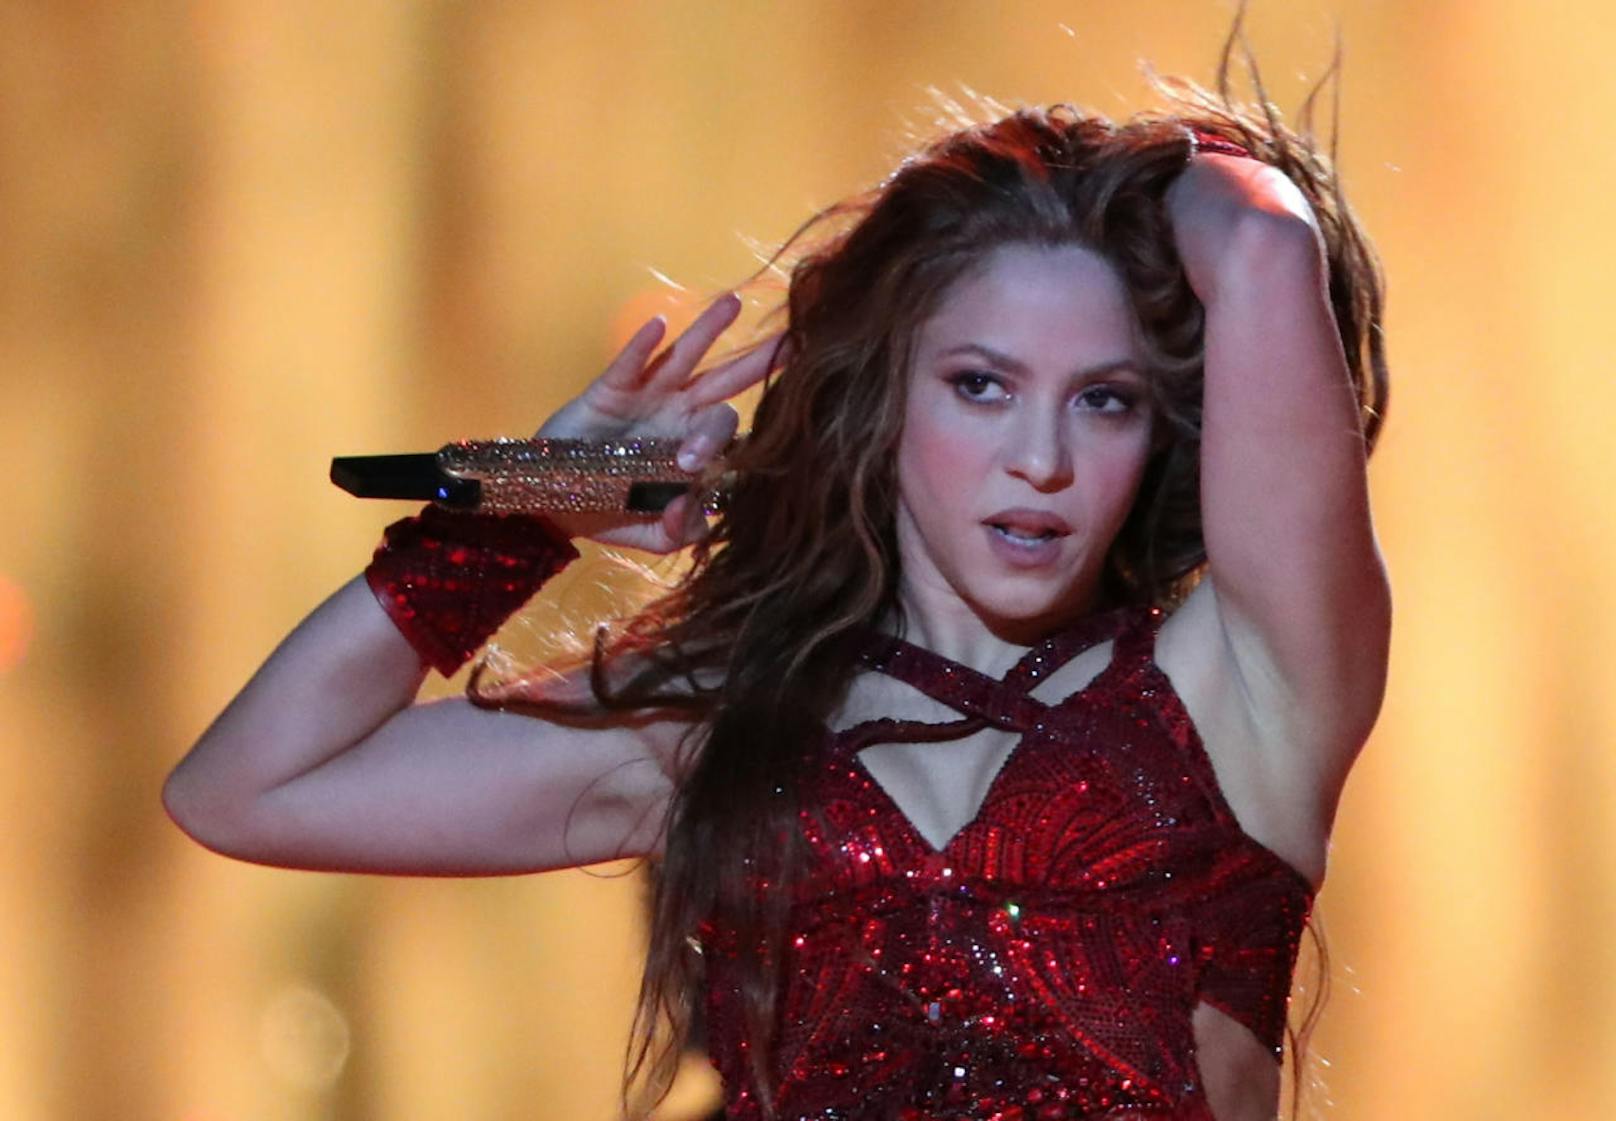 Shakira und Jennifer Lopez heizten bei der Halftime-Show ein! Die besten Bilder zum Durchklicken!